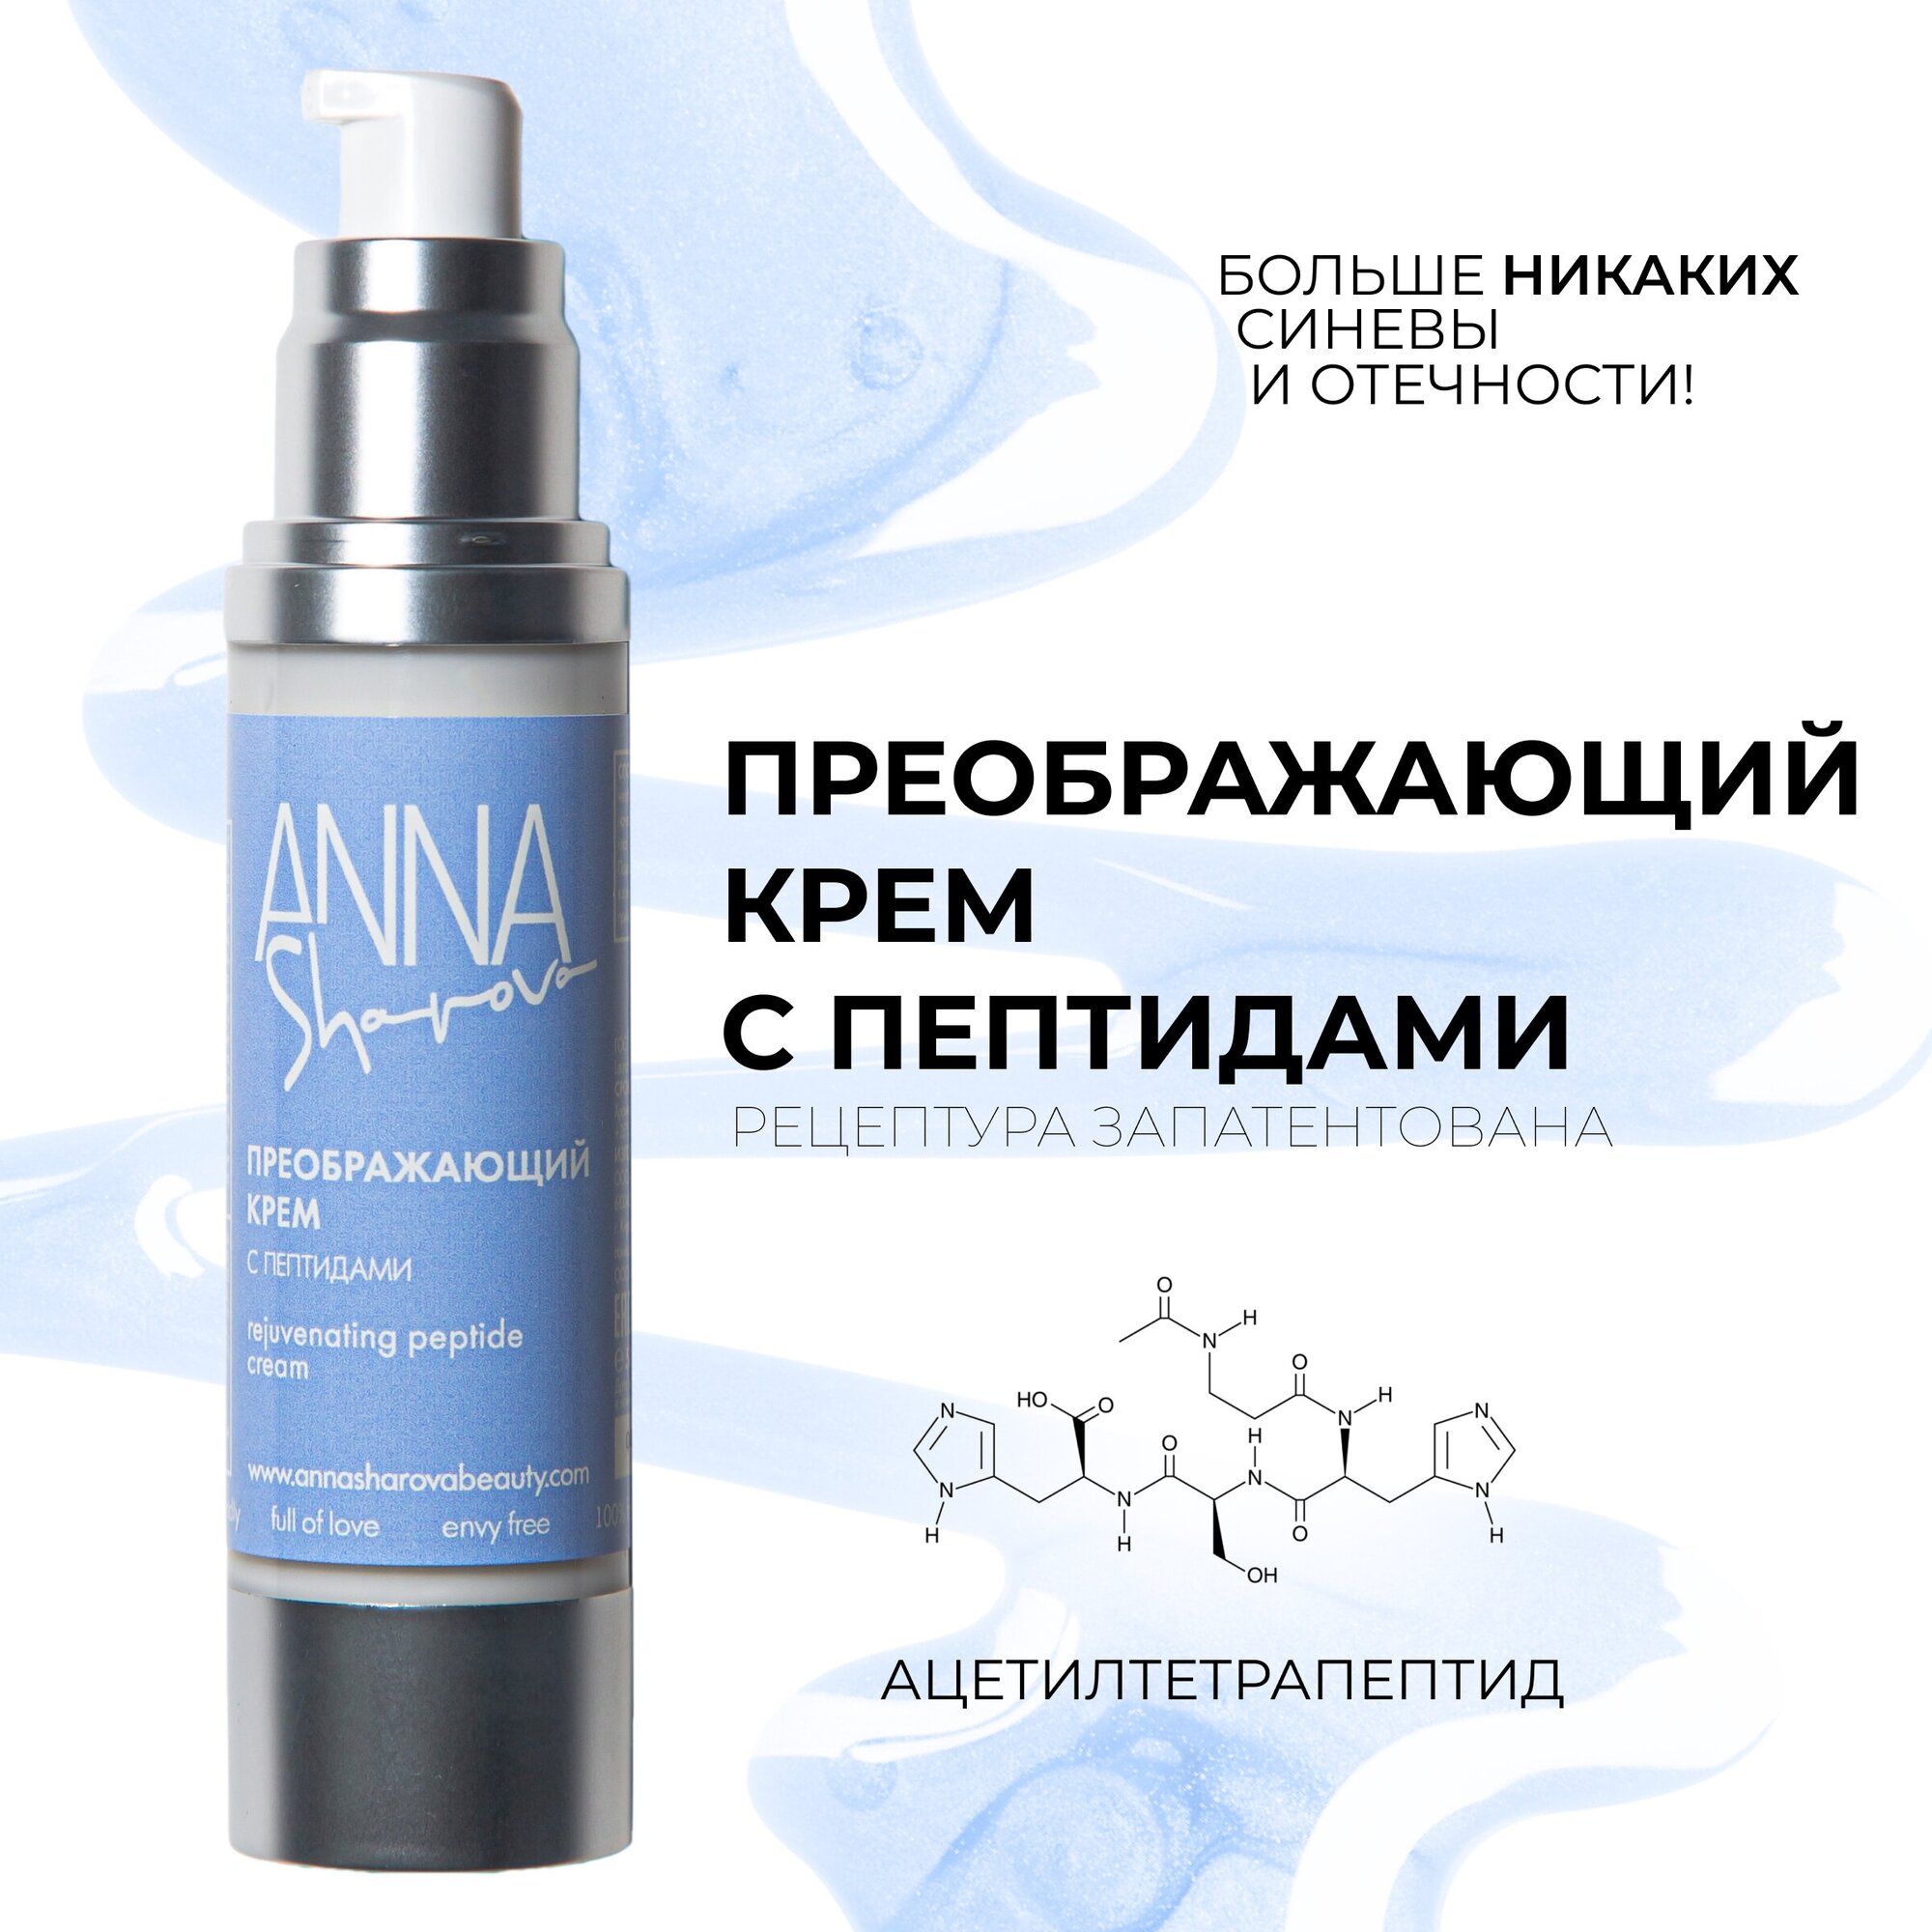 Крем с пептидами для лица преображающий для всех типов кожи, 50 мл, ANNA SHAROVA